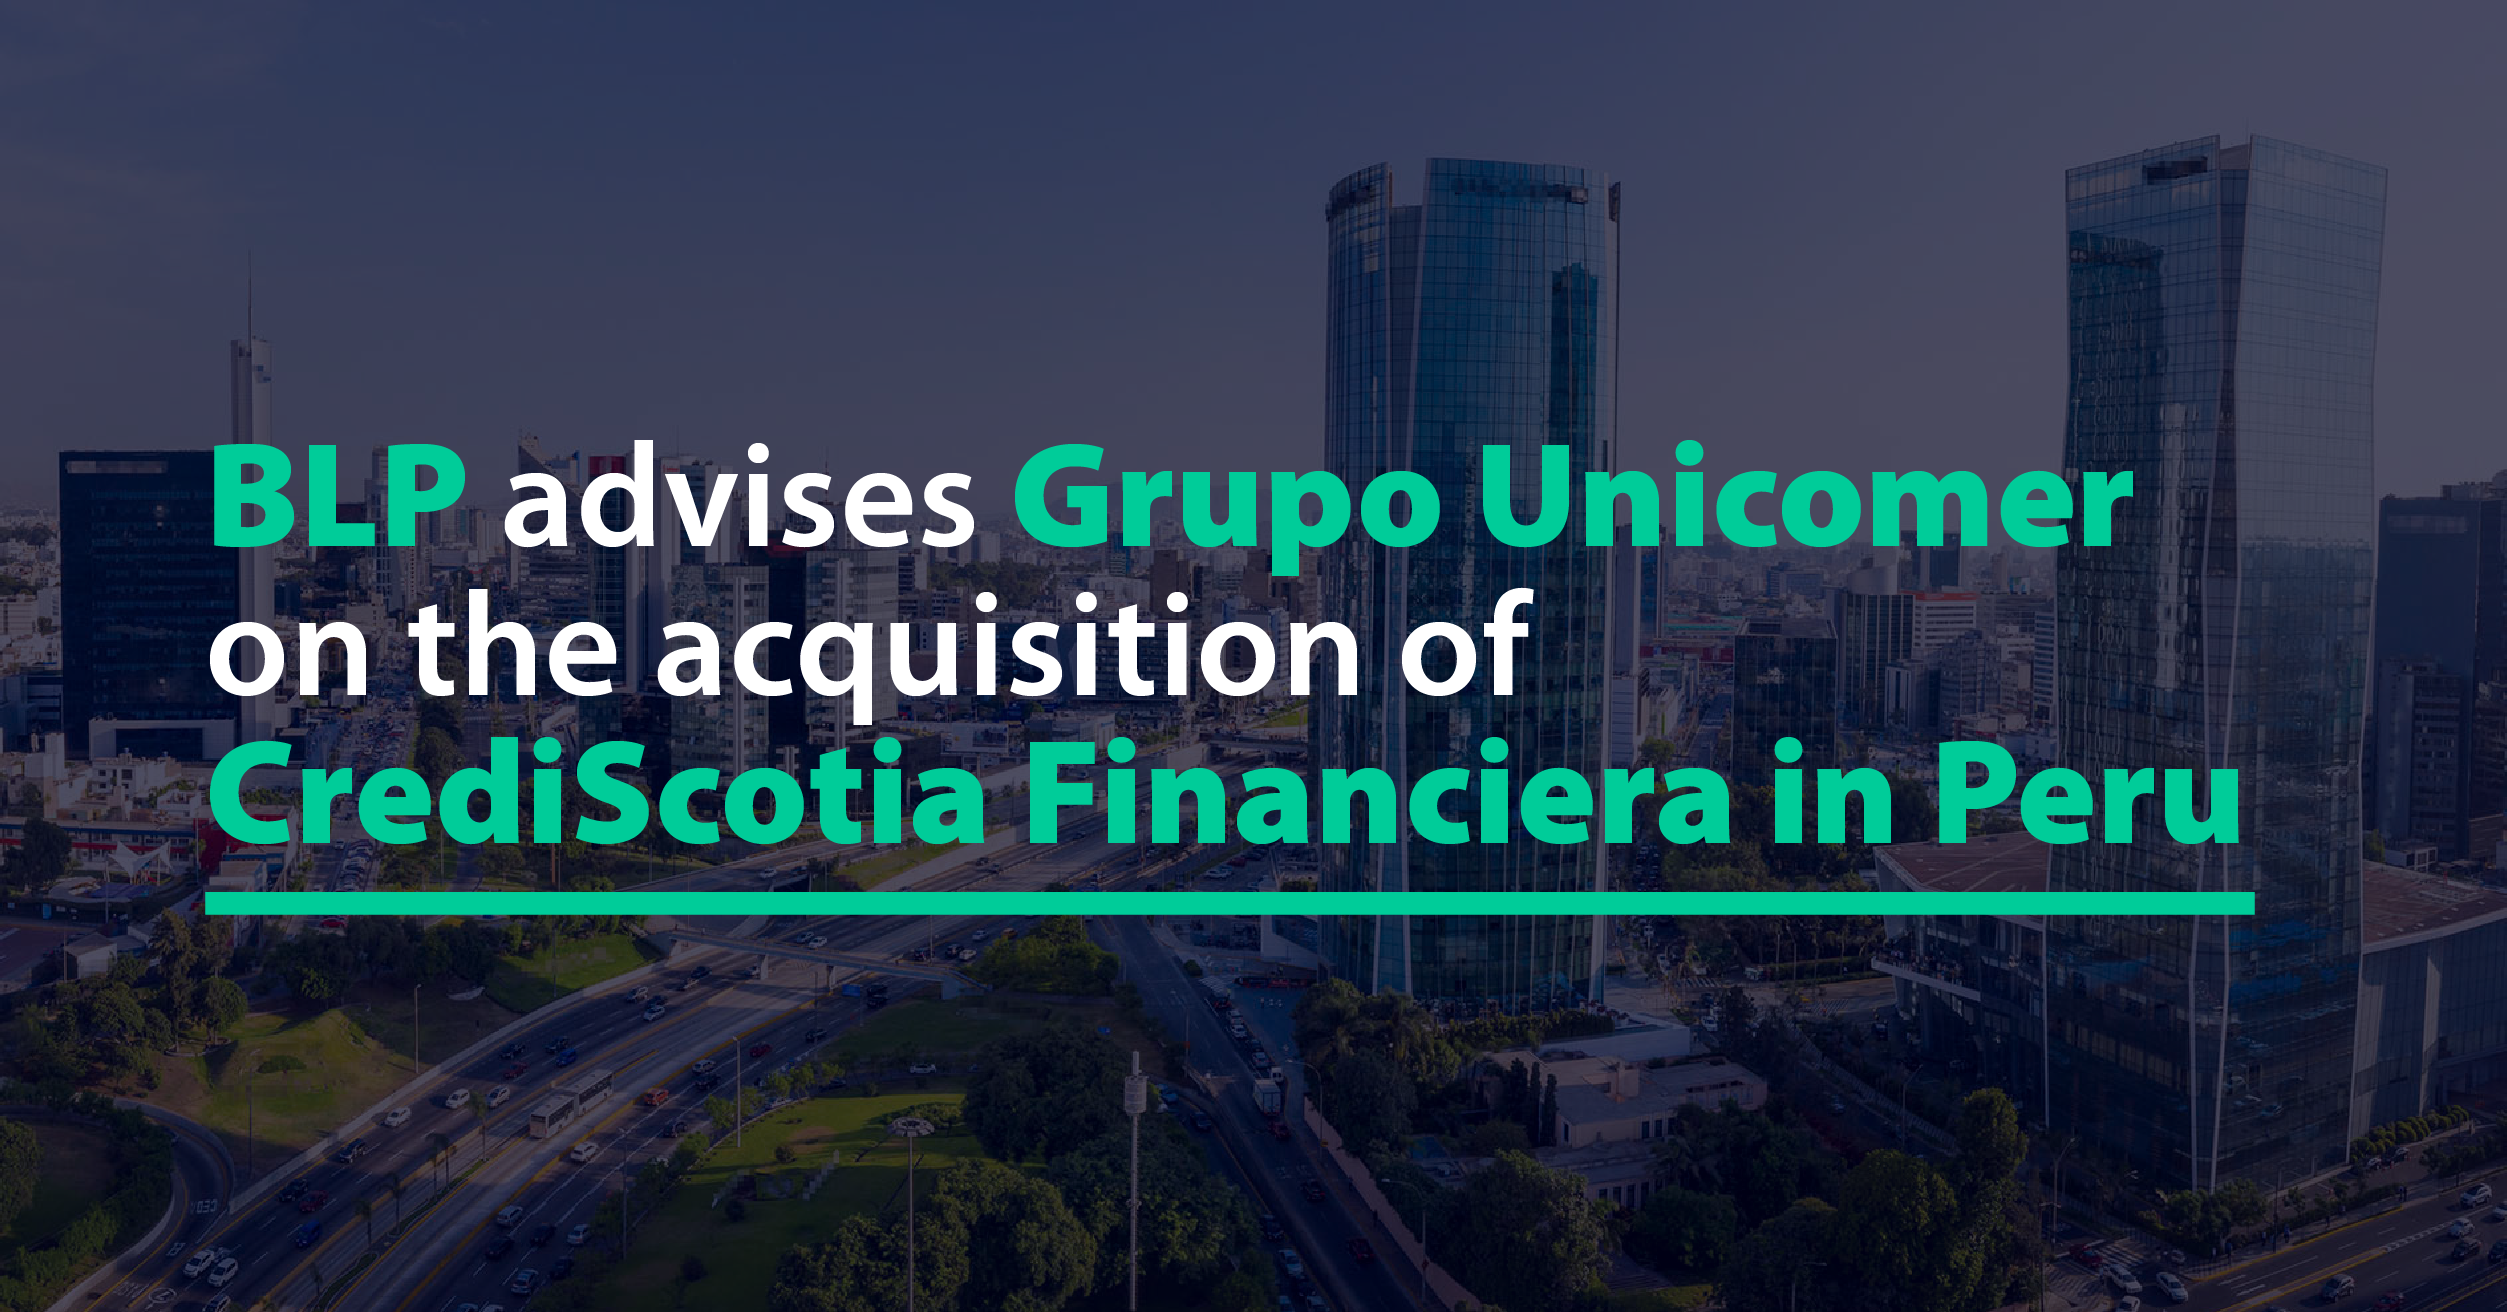 BLP advises Grupo Unicomer on the acquisition of CrediScotia Financiera in Peru